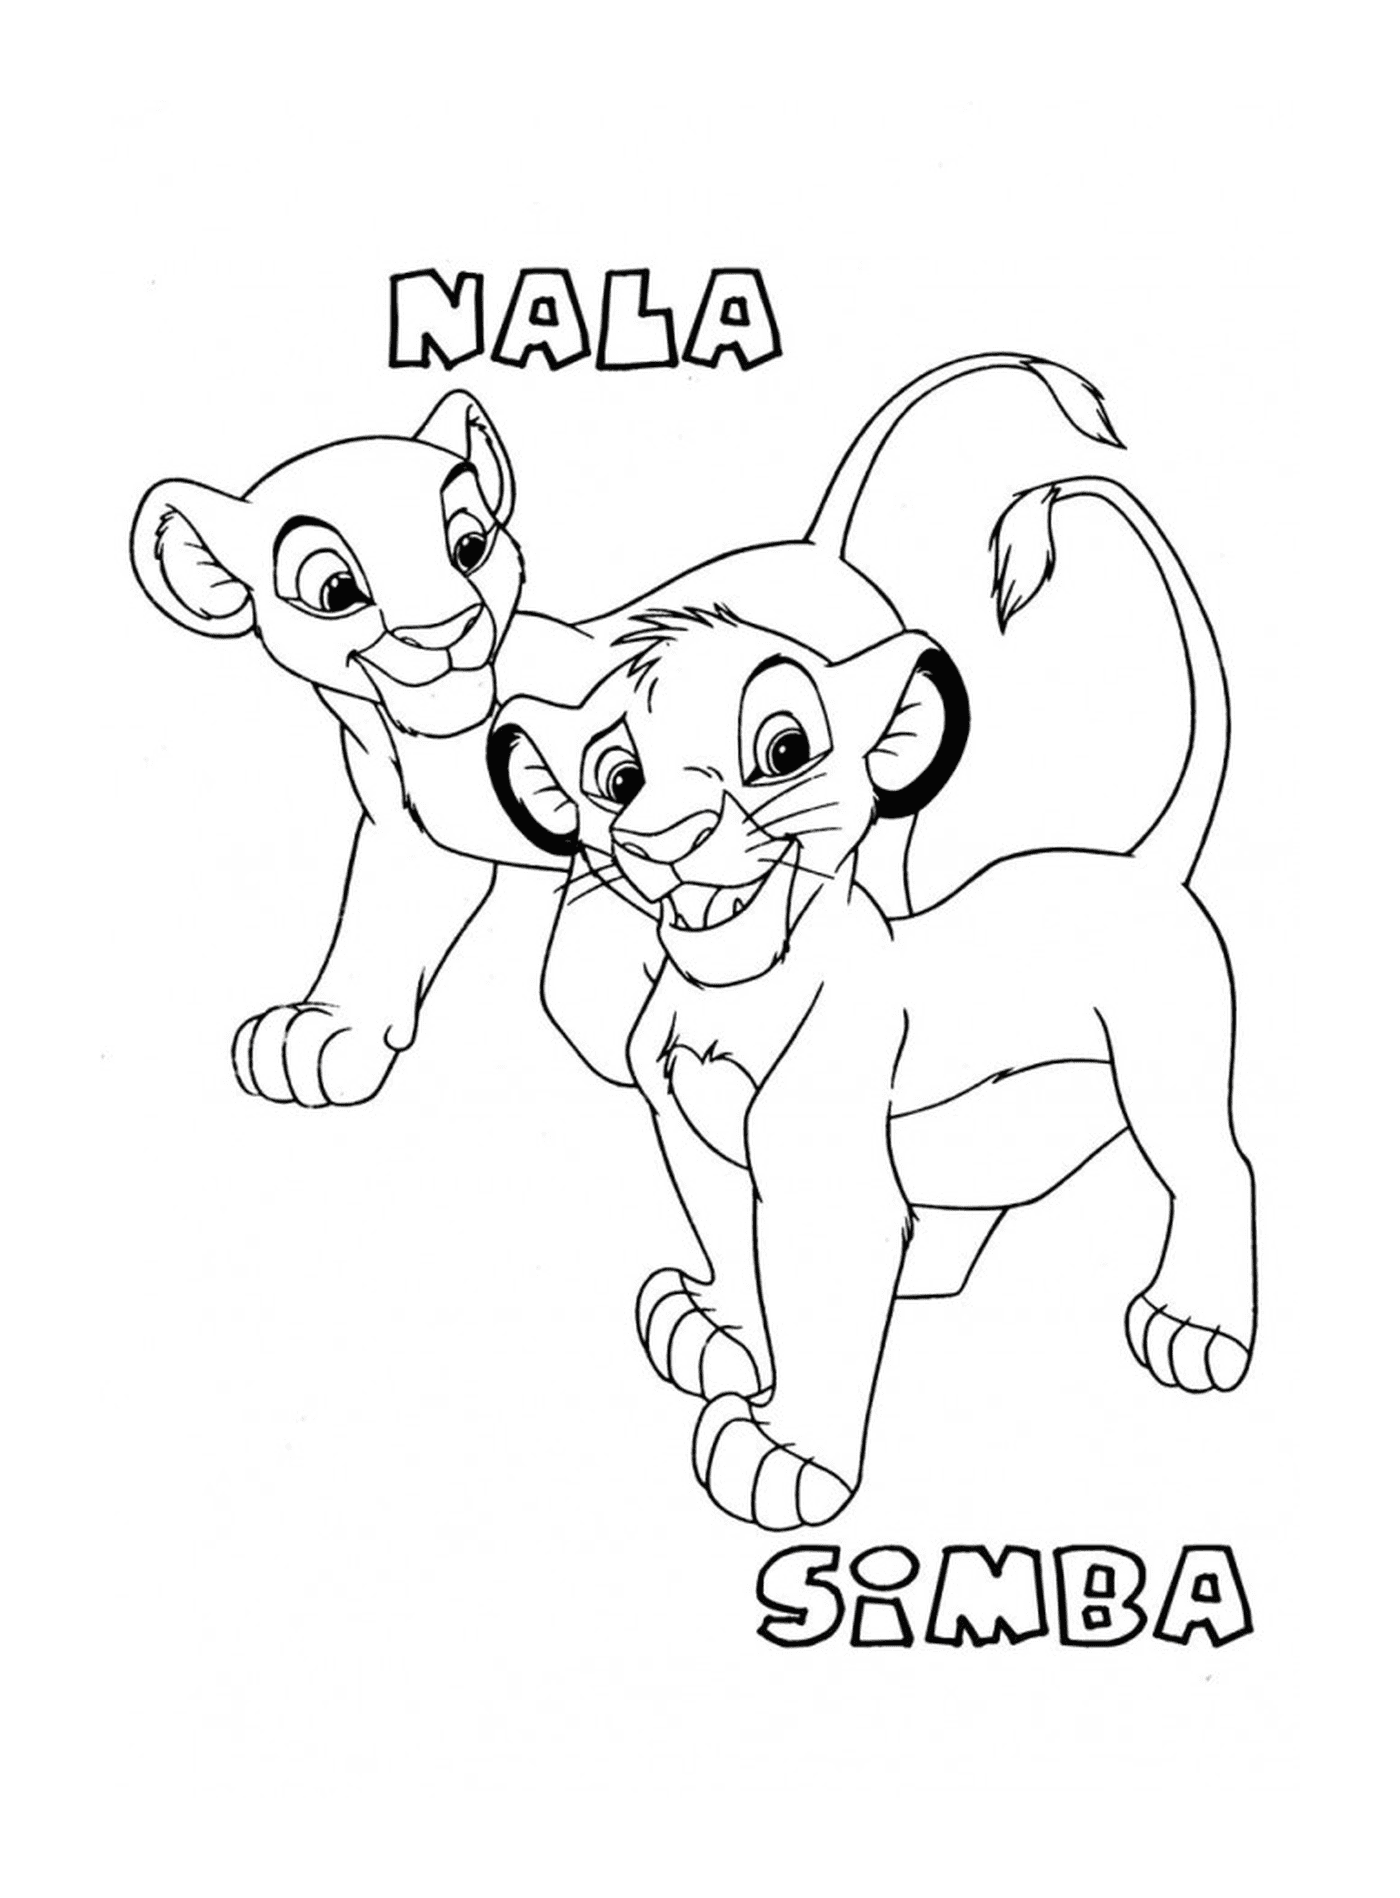   Simba et Nala bébés dans Le Roi Lion 